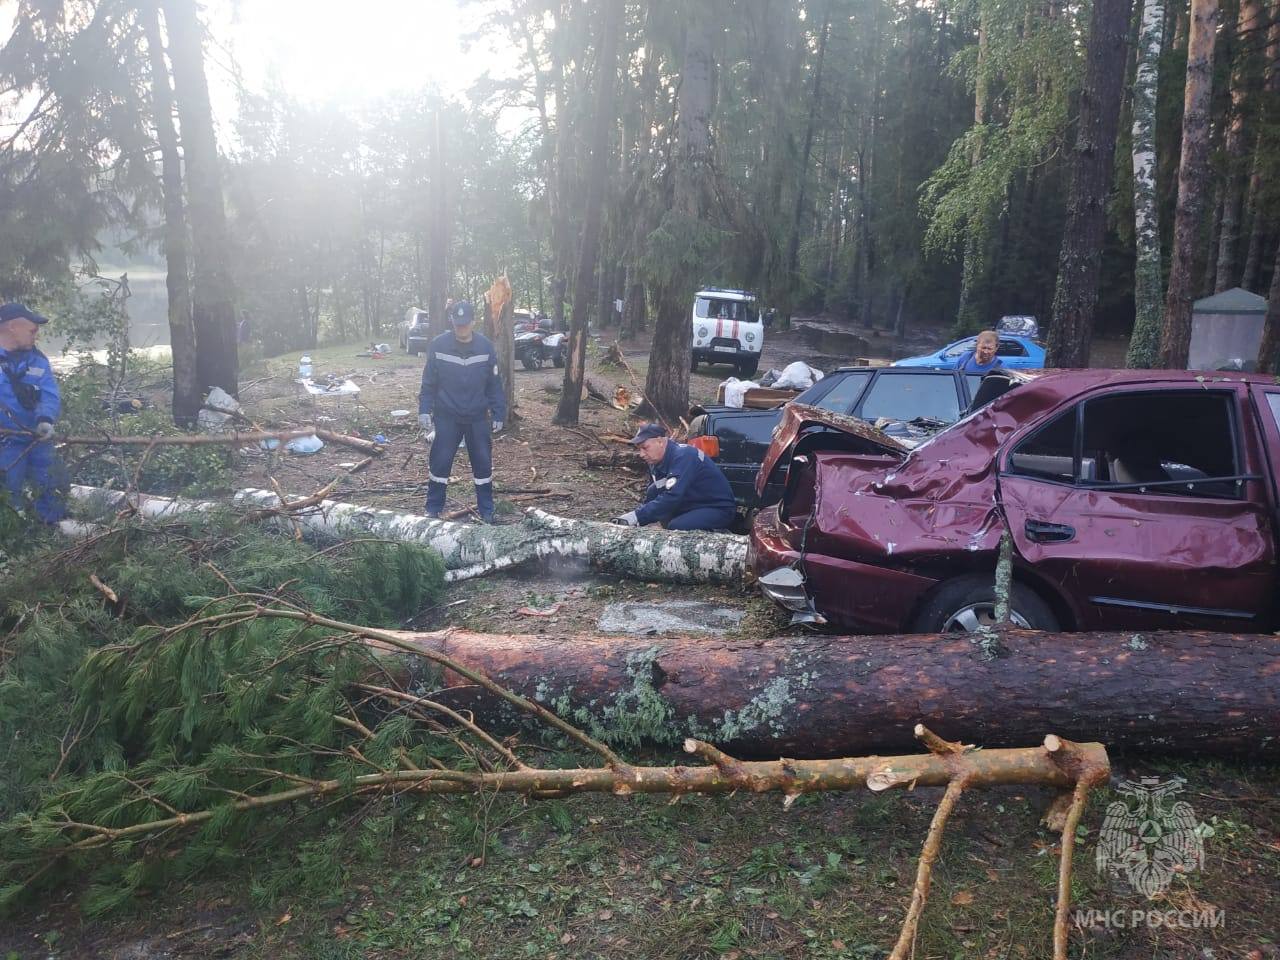 (ФОТО) Во время урагана в Марий Эл деревья завалили палаточный лагерь с туристами. Погибли 10 человек